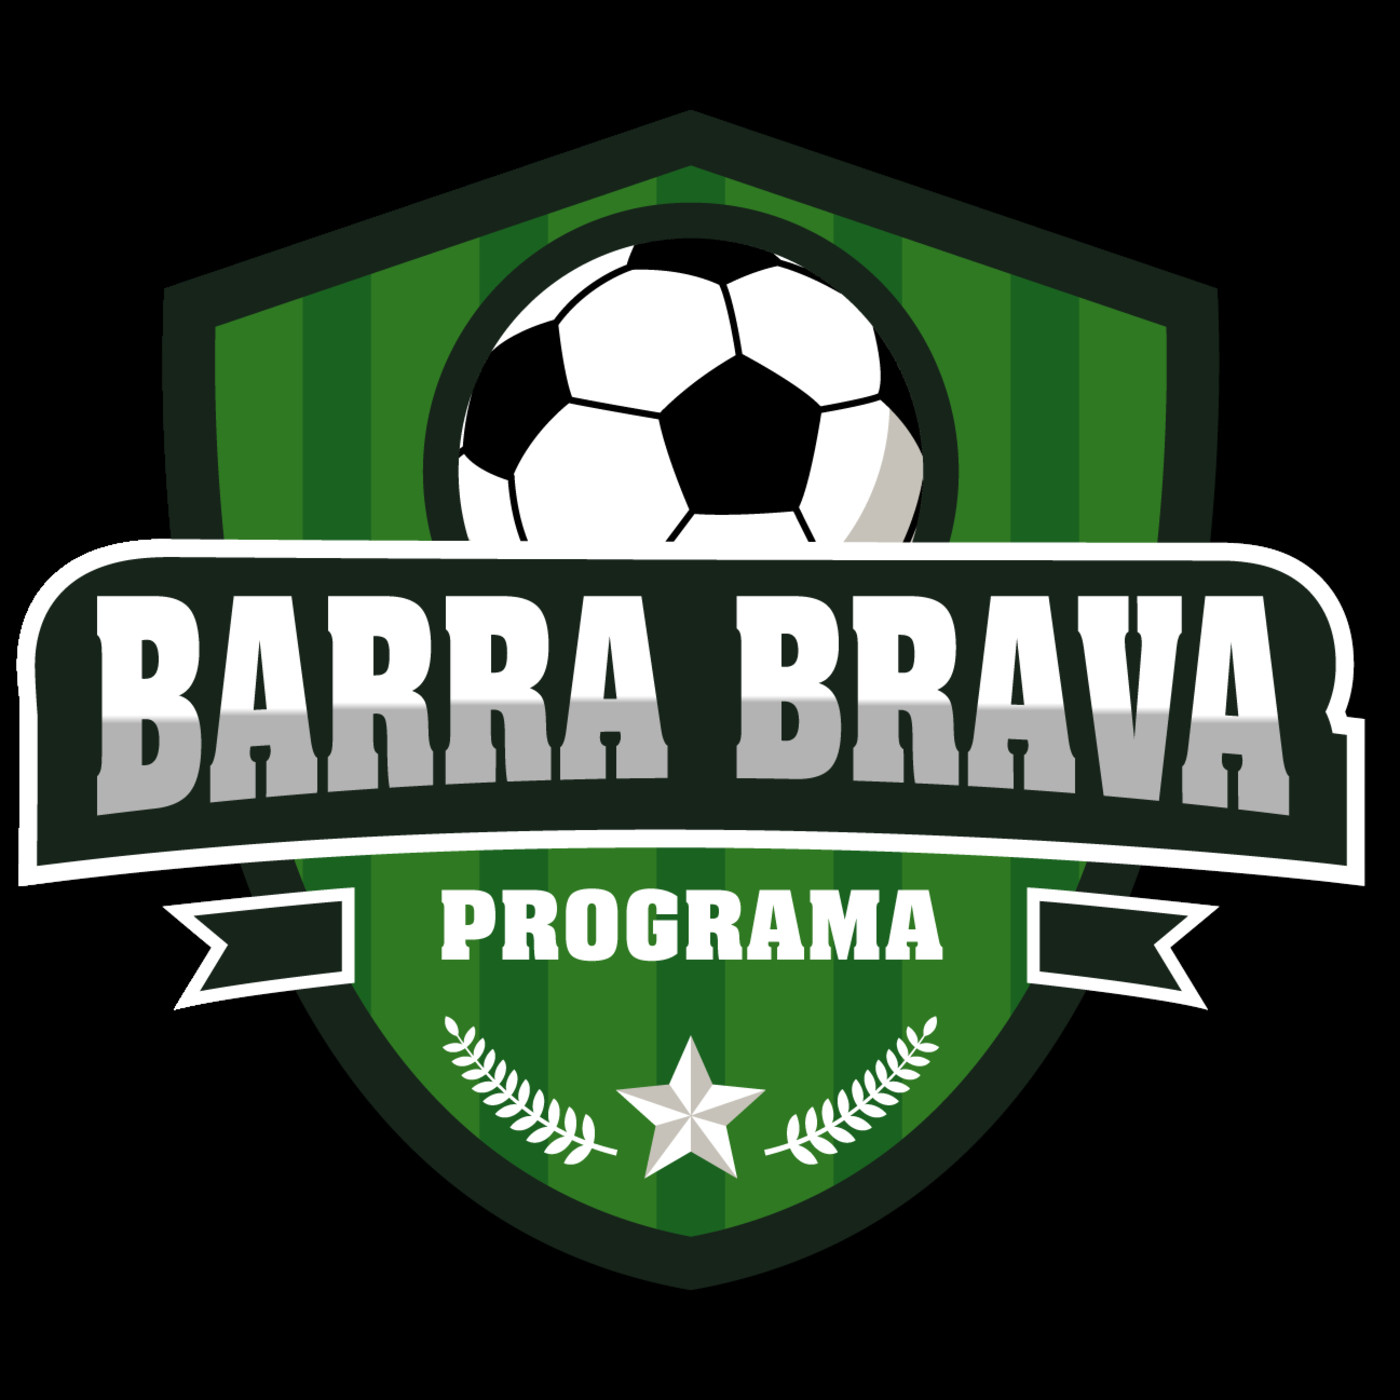 3. Pocast BARRA BRAVA Programa 29 de abril de 2019